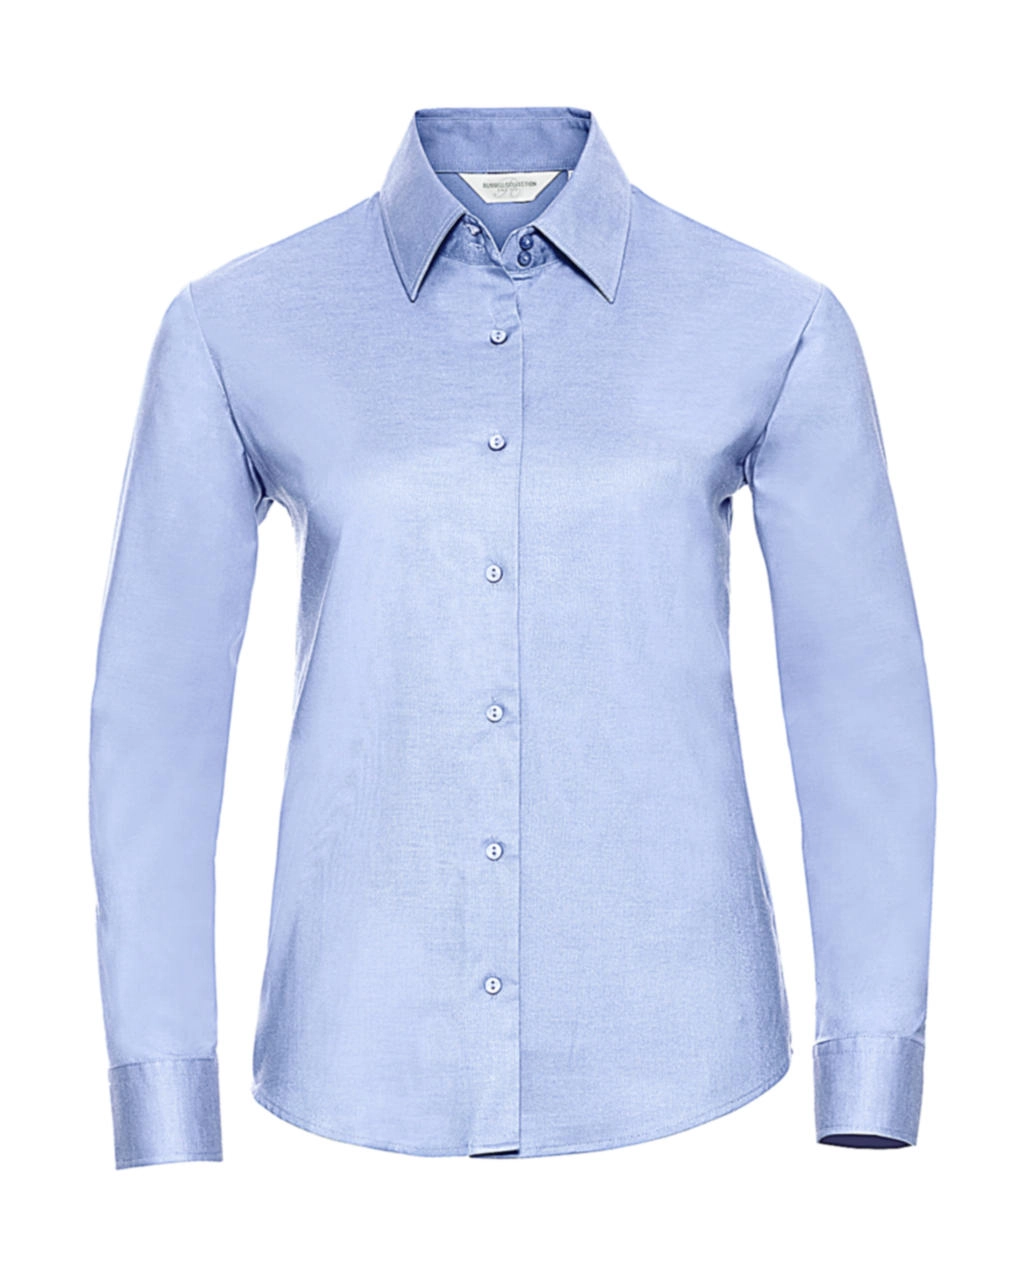 Ladies` Classic Oxford Shirt LS zum Besticken und Bedrucken in der Farbe Oxford Blue mit Ihren Logo, Schriftzug oder Motiv.